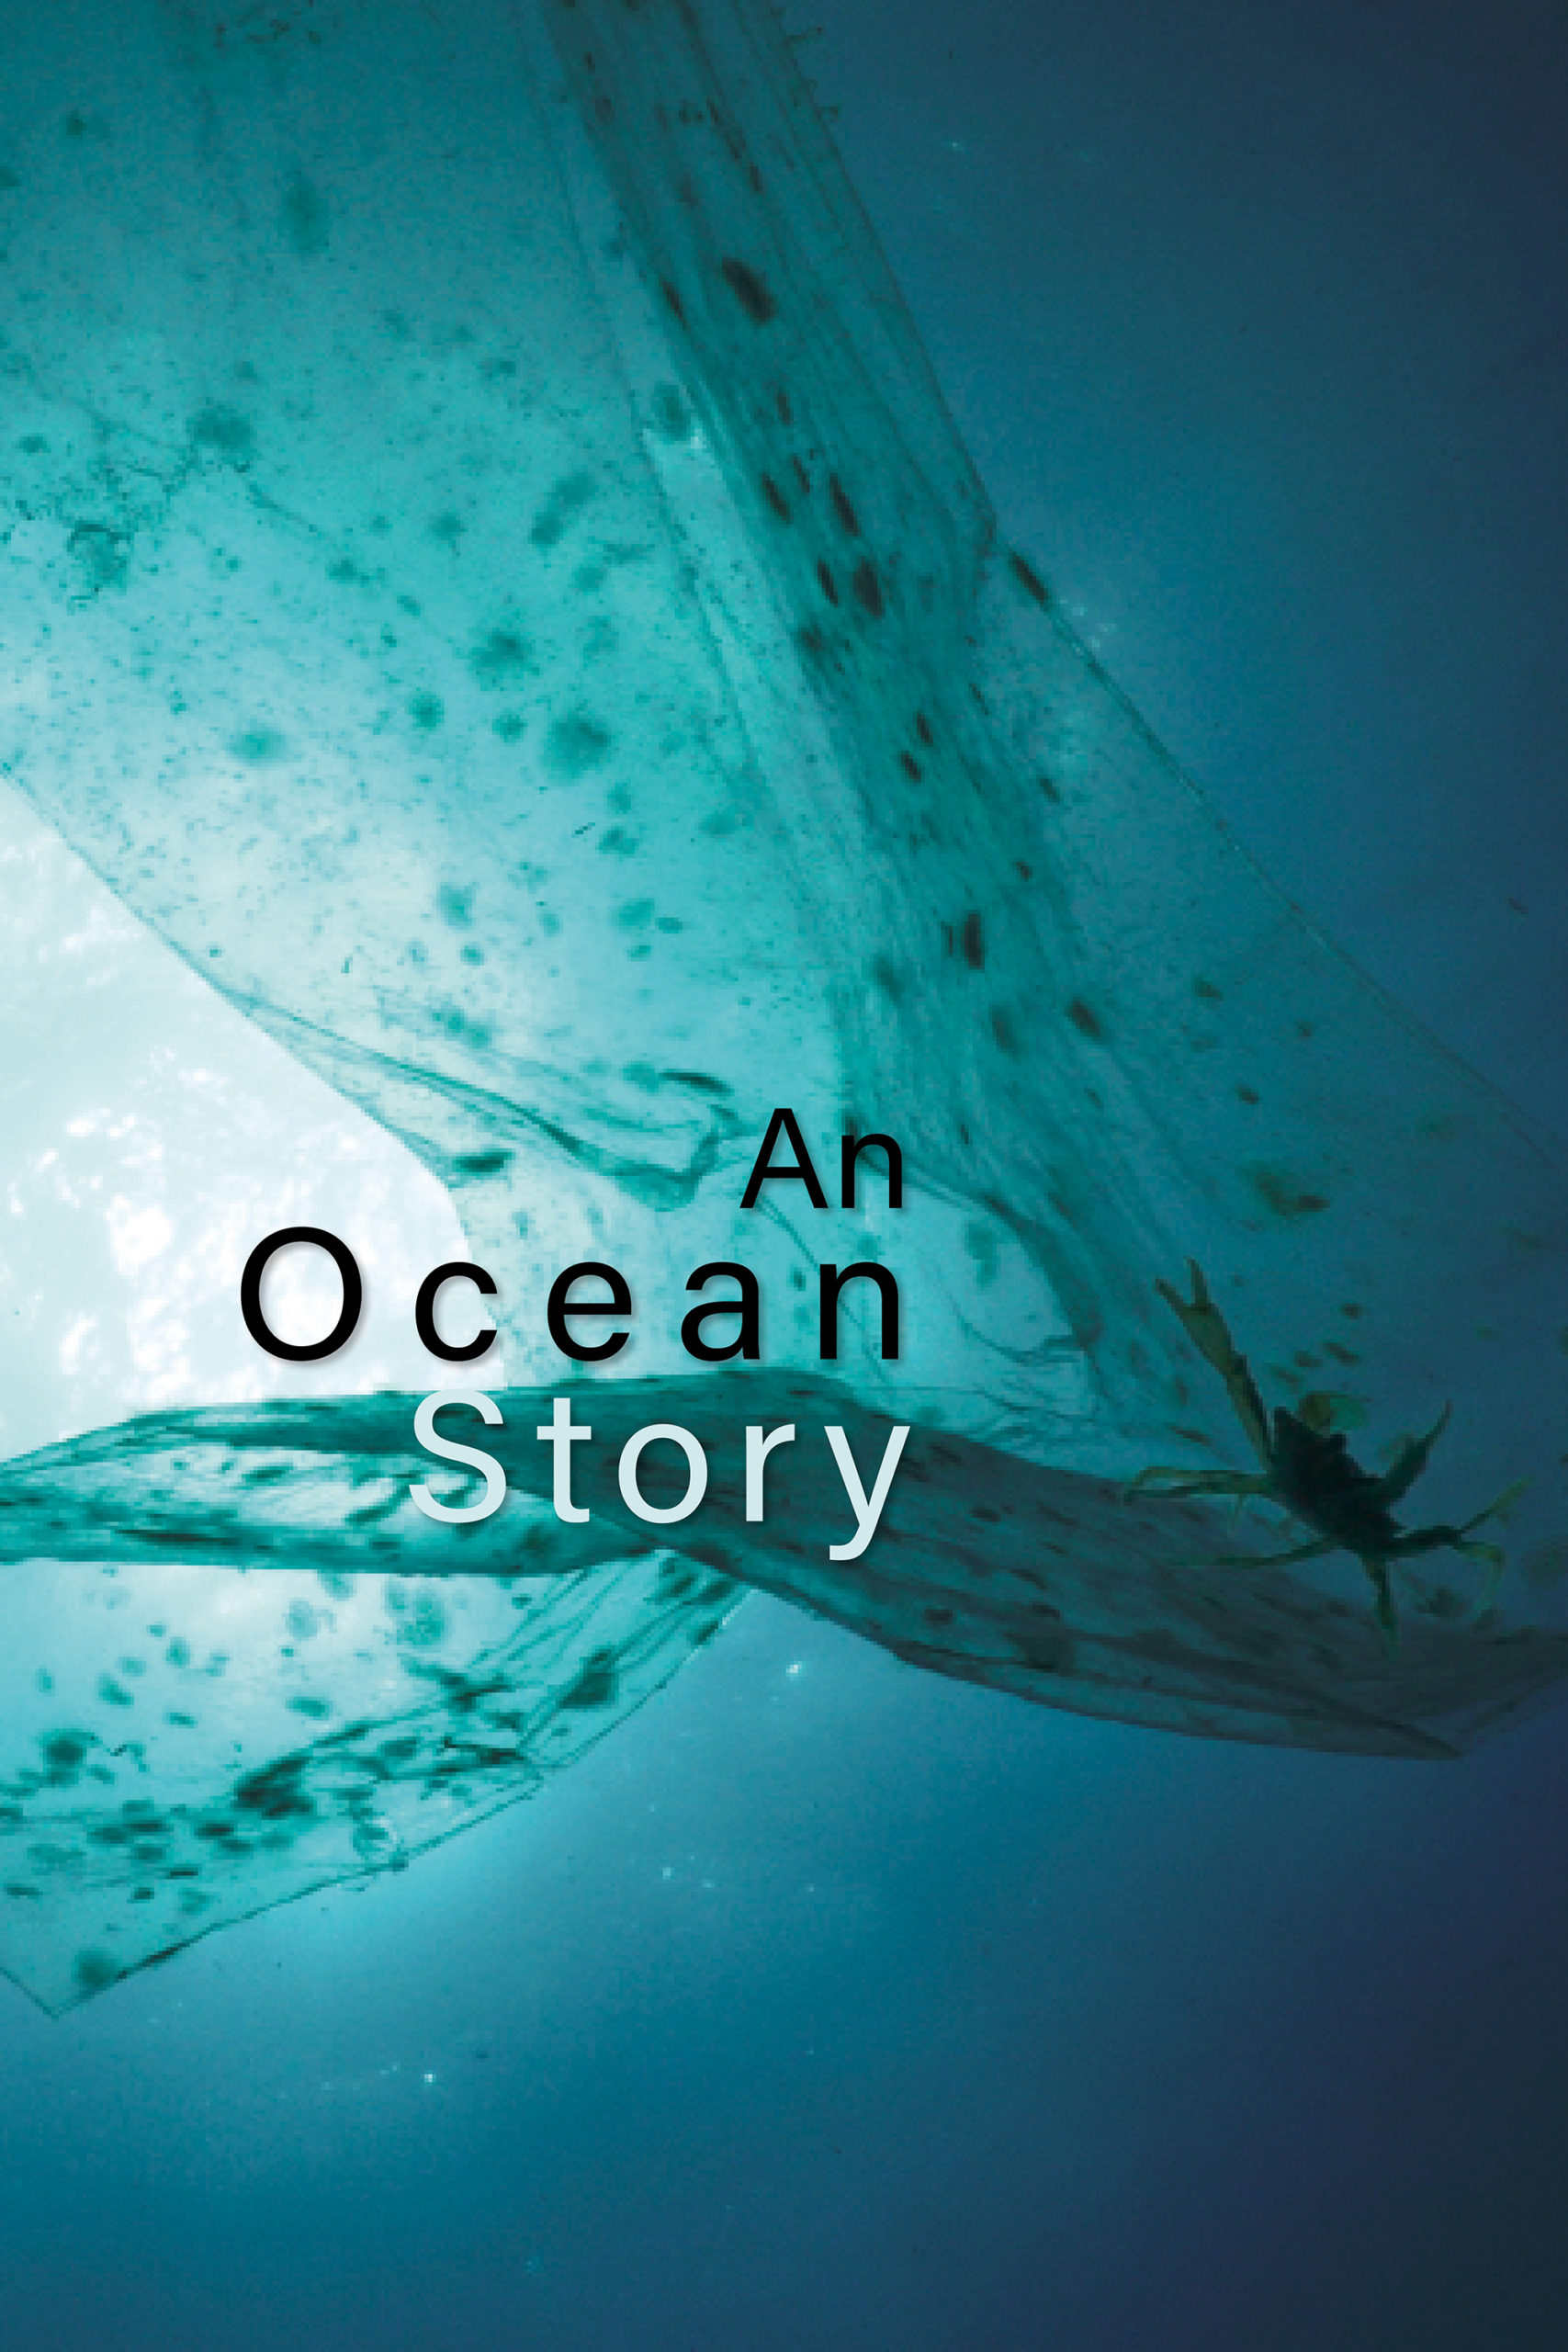 An ocean story